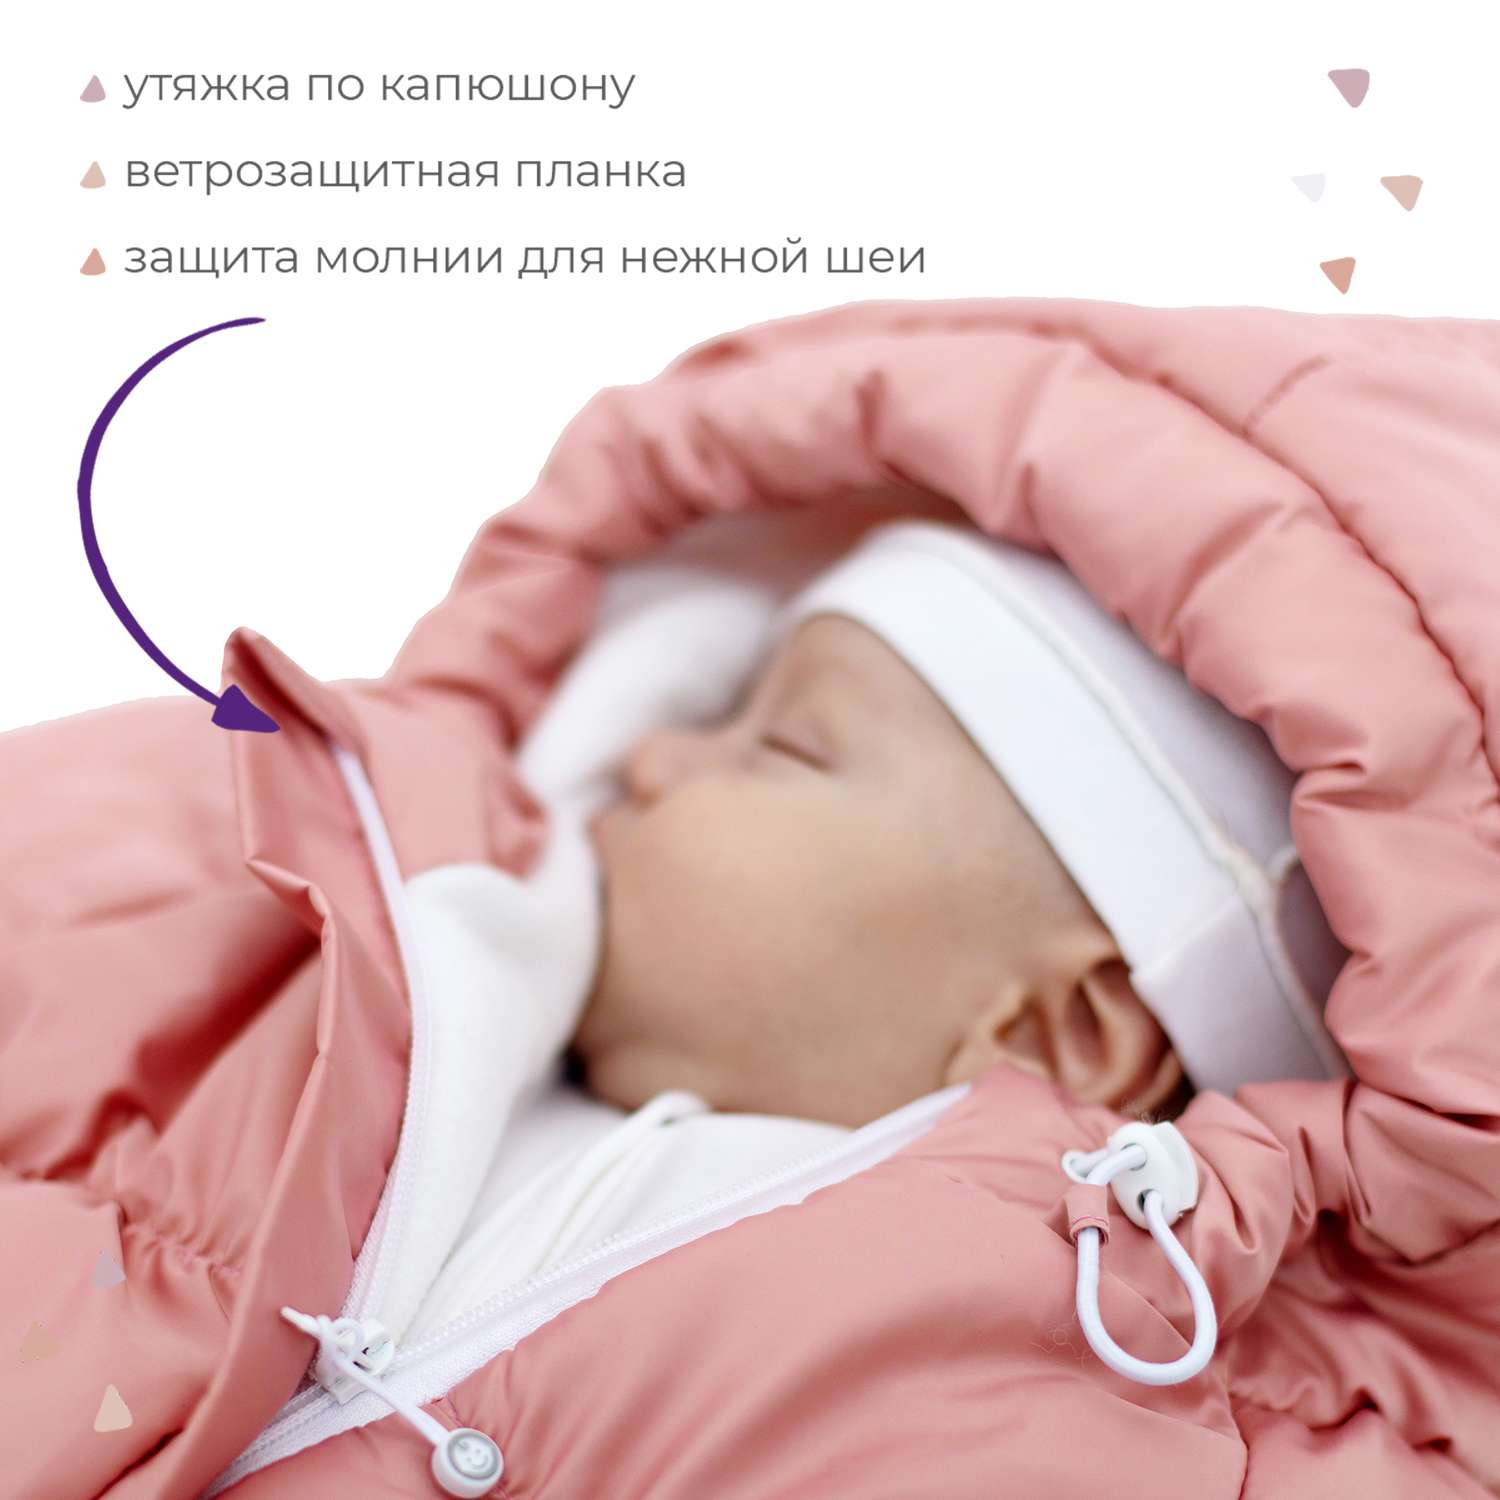 Конверт для новорожденного inlovery на выписку/в коляску «Маршмеллоу» розовый - фото 3